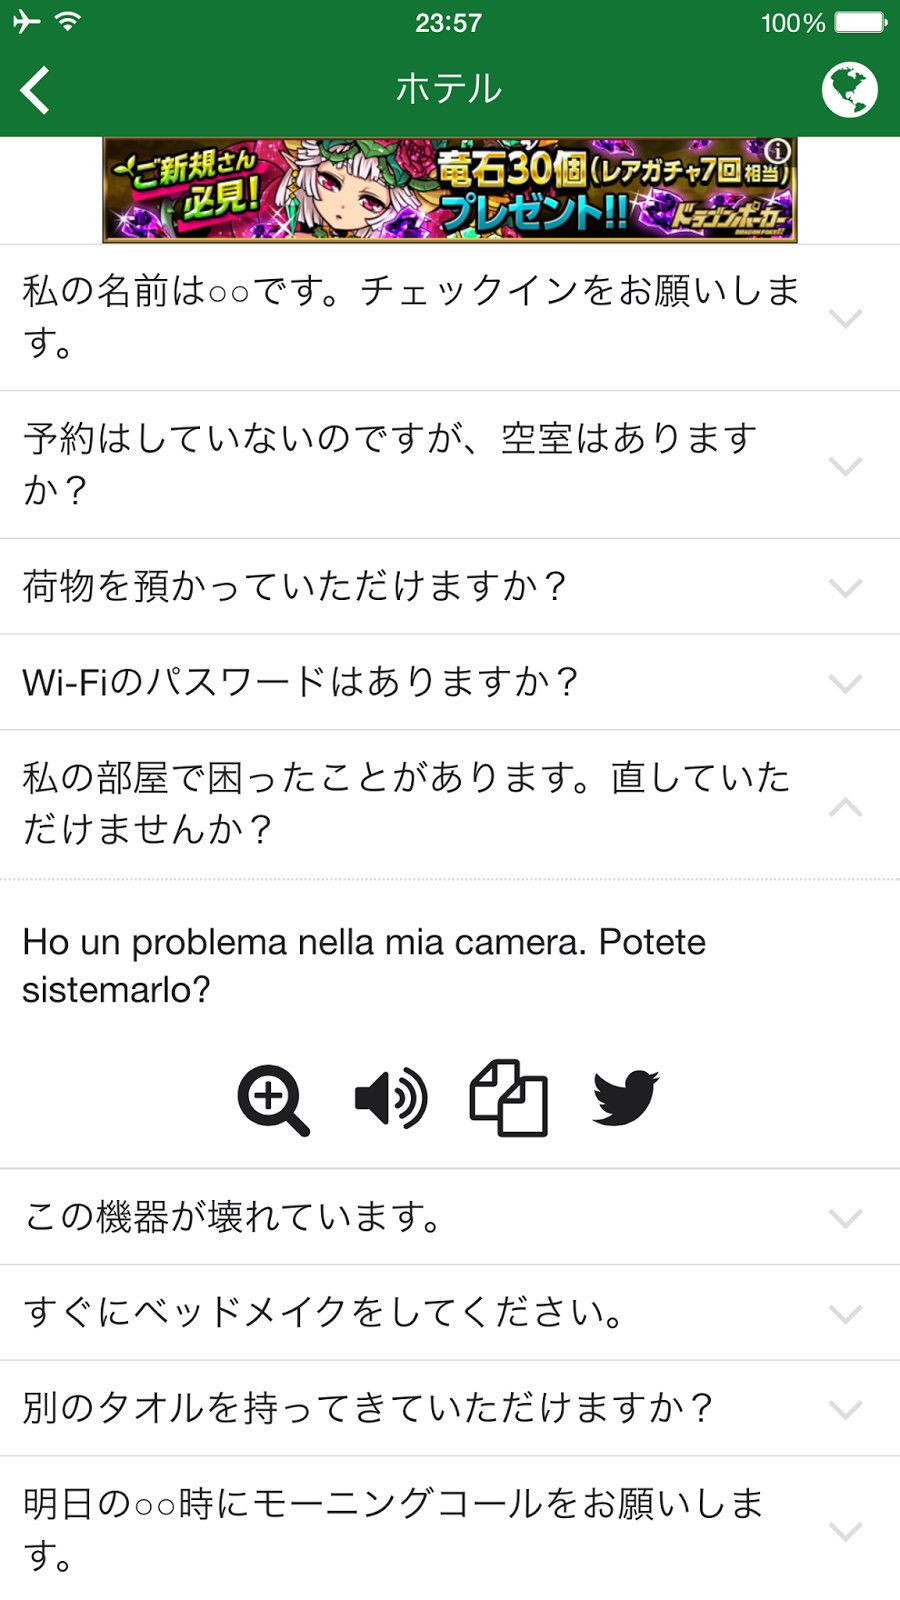 レビュー 旅行必須アプリにイタリア語版が登場 Excuse Me Italian Applidata